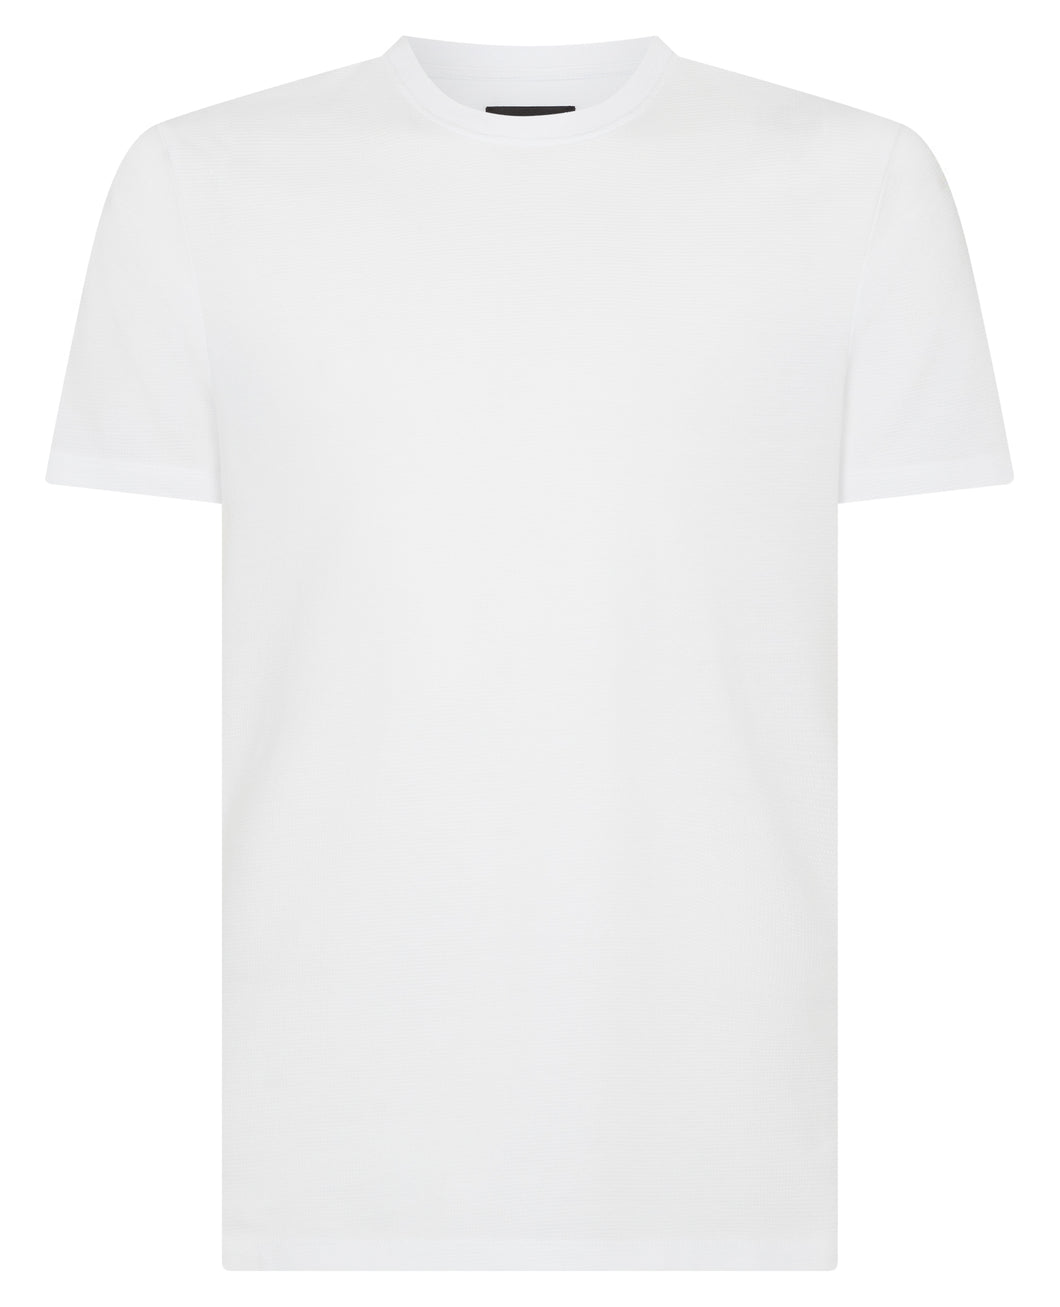 Remus Uomo Textured T-Shirt White